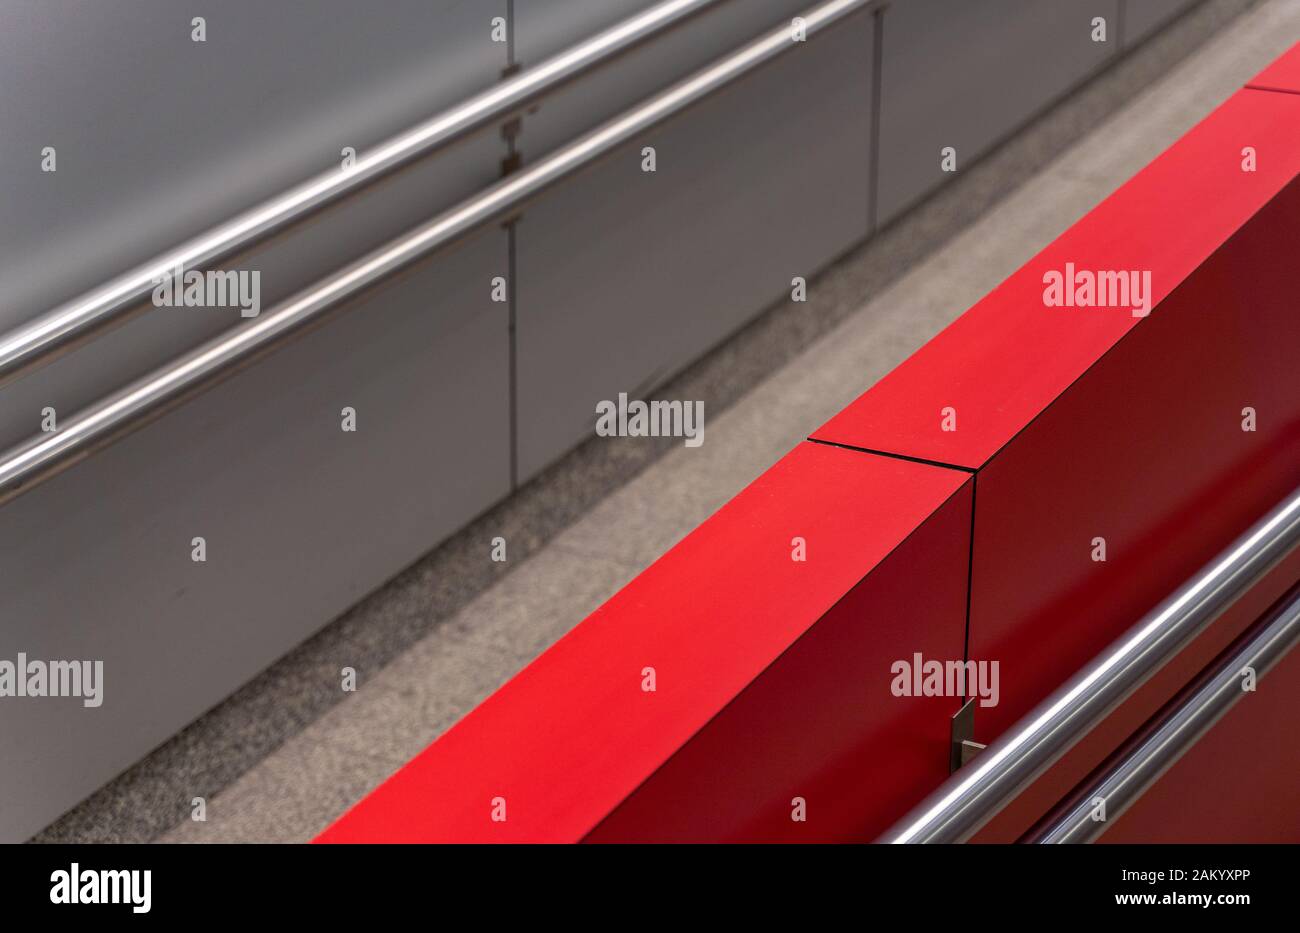 Disabilitare il percorso astratto di close-up di architettura moderna con banda rossa e ringhiere in acciaio. Foto Stock